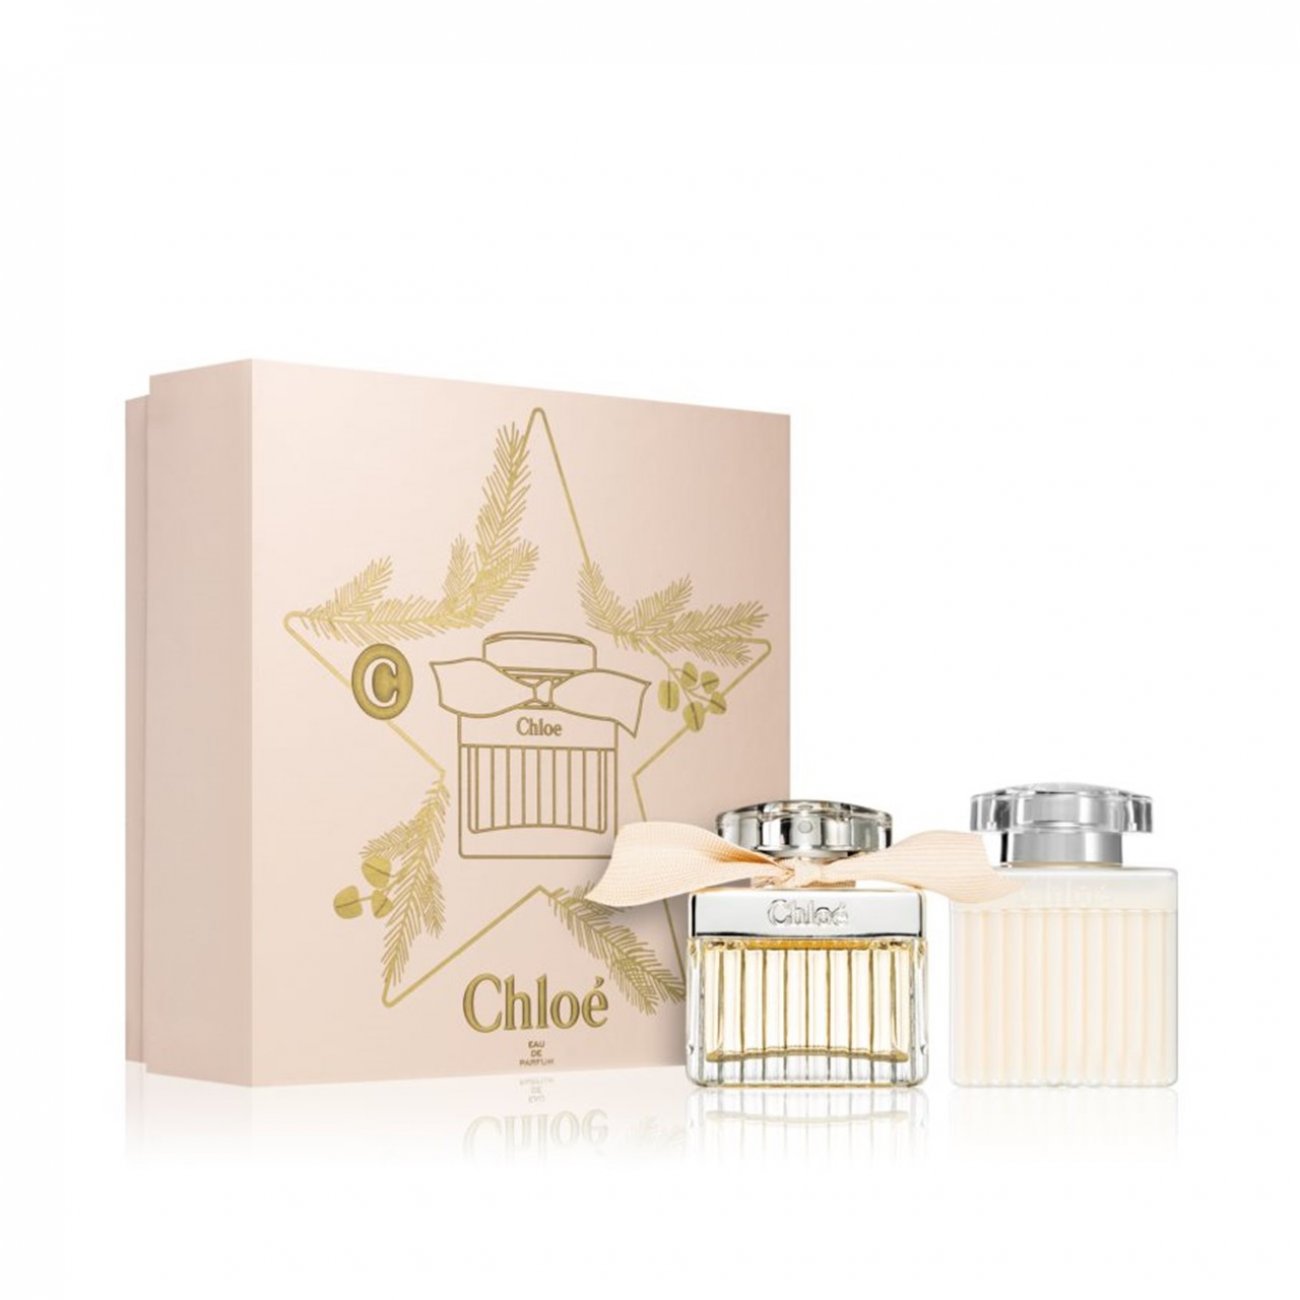 Buy GIFT SET:Chloé Signature Eau de Parfum For Women 50ml Christmas